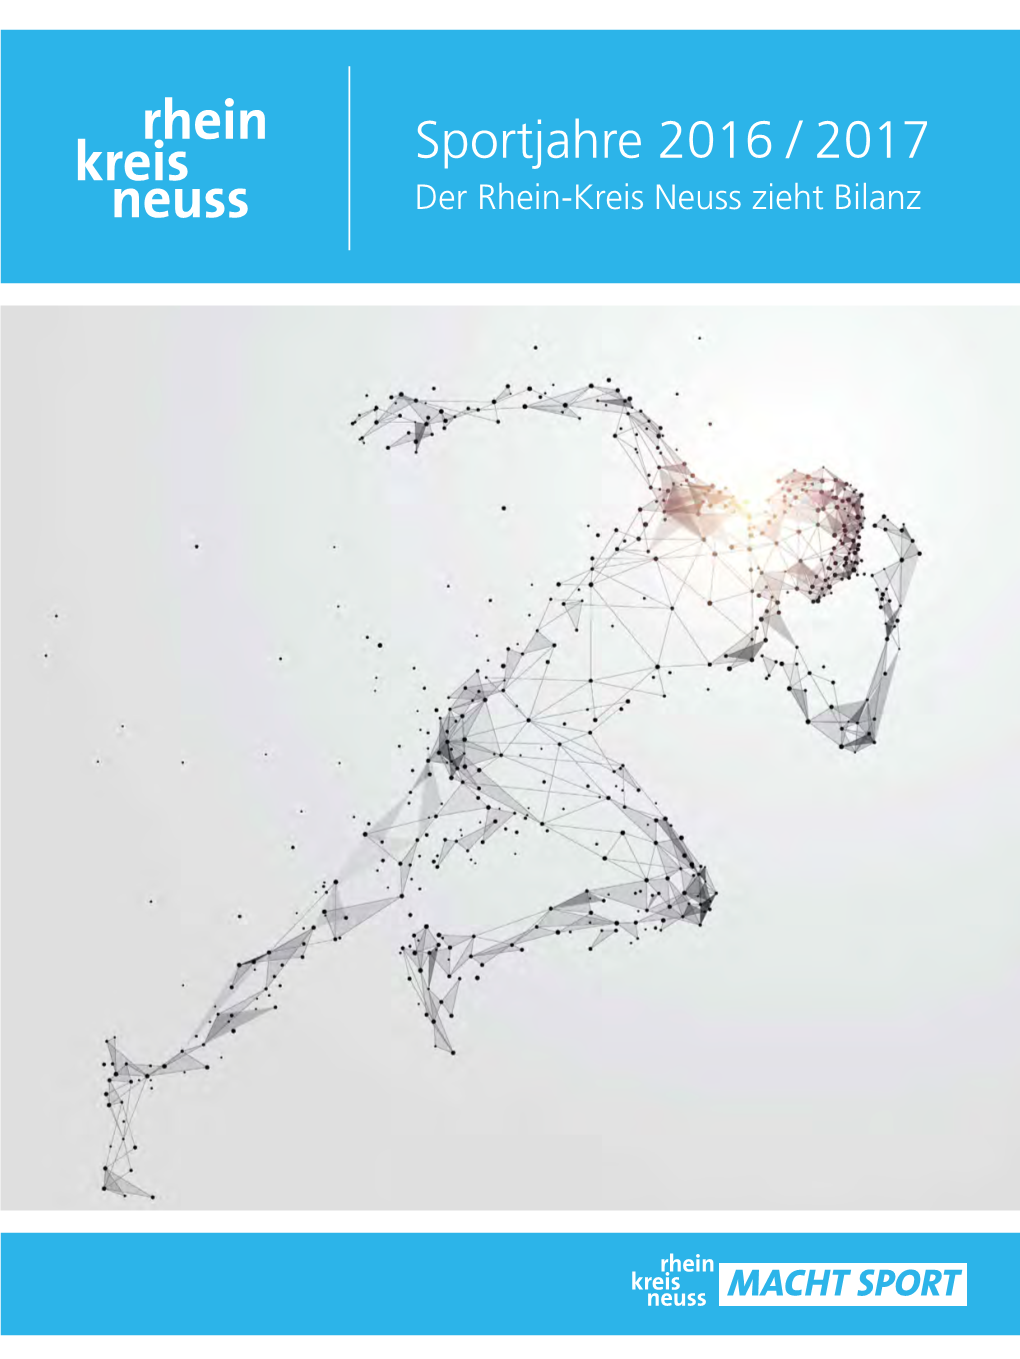 Sportjahre 2016 / 2017 Der Rhein-Kreis Neuss Zieht Bilanz Fotos: Rhein-Kreis Neuss